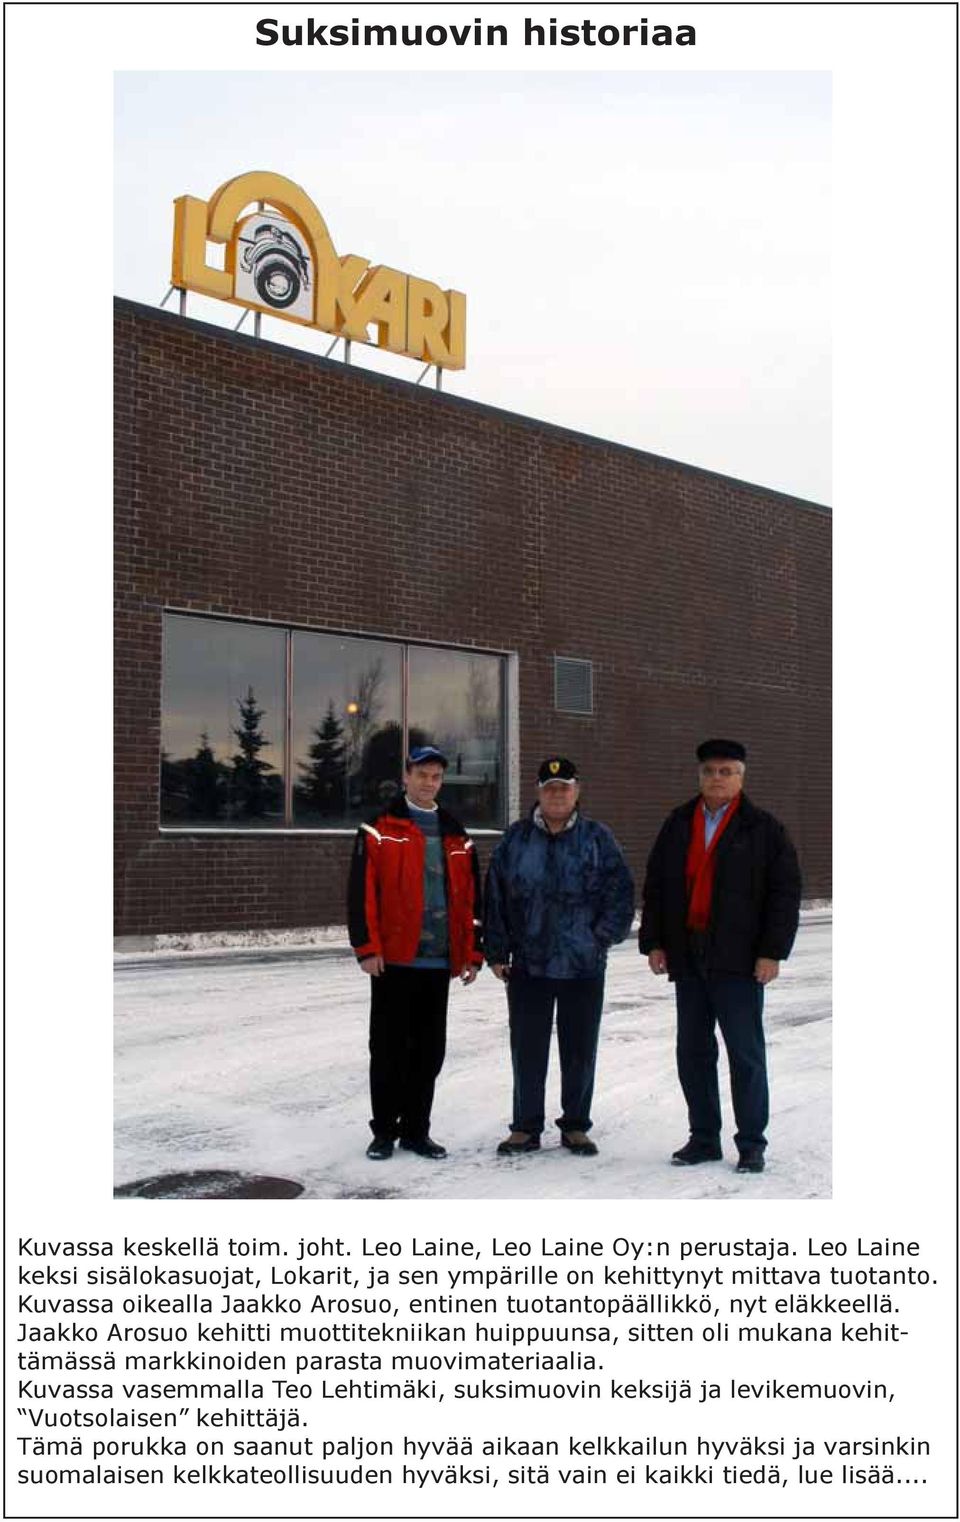 Kuvassa oikealla Jaakko Arosuo, entinen tuotantopäällikkö, nyt eläkkeellä.